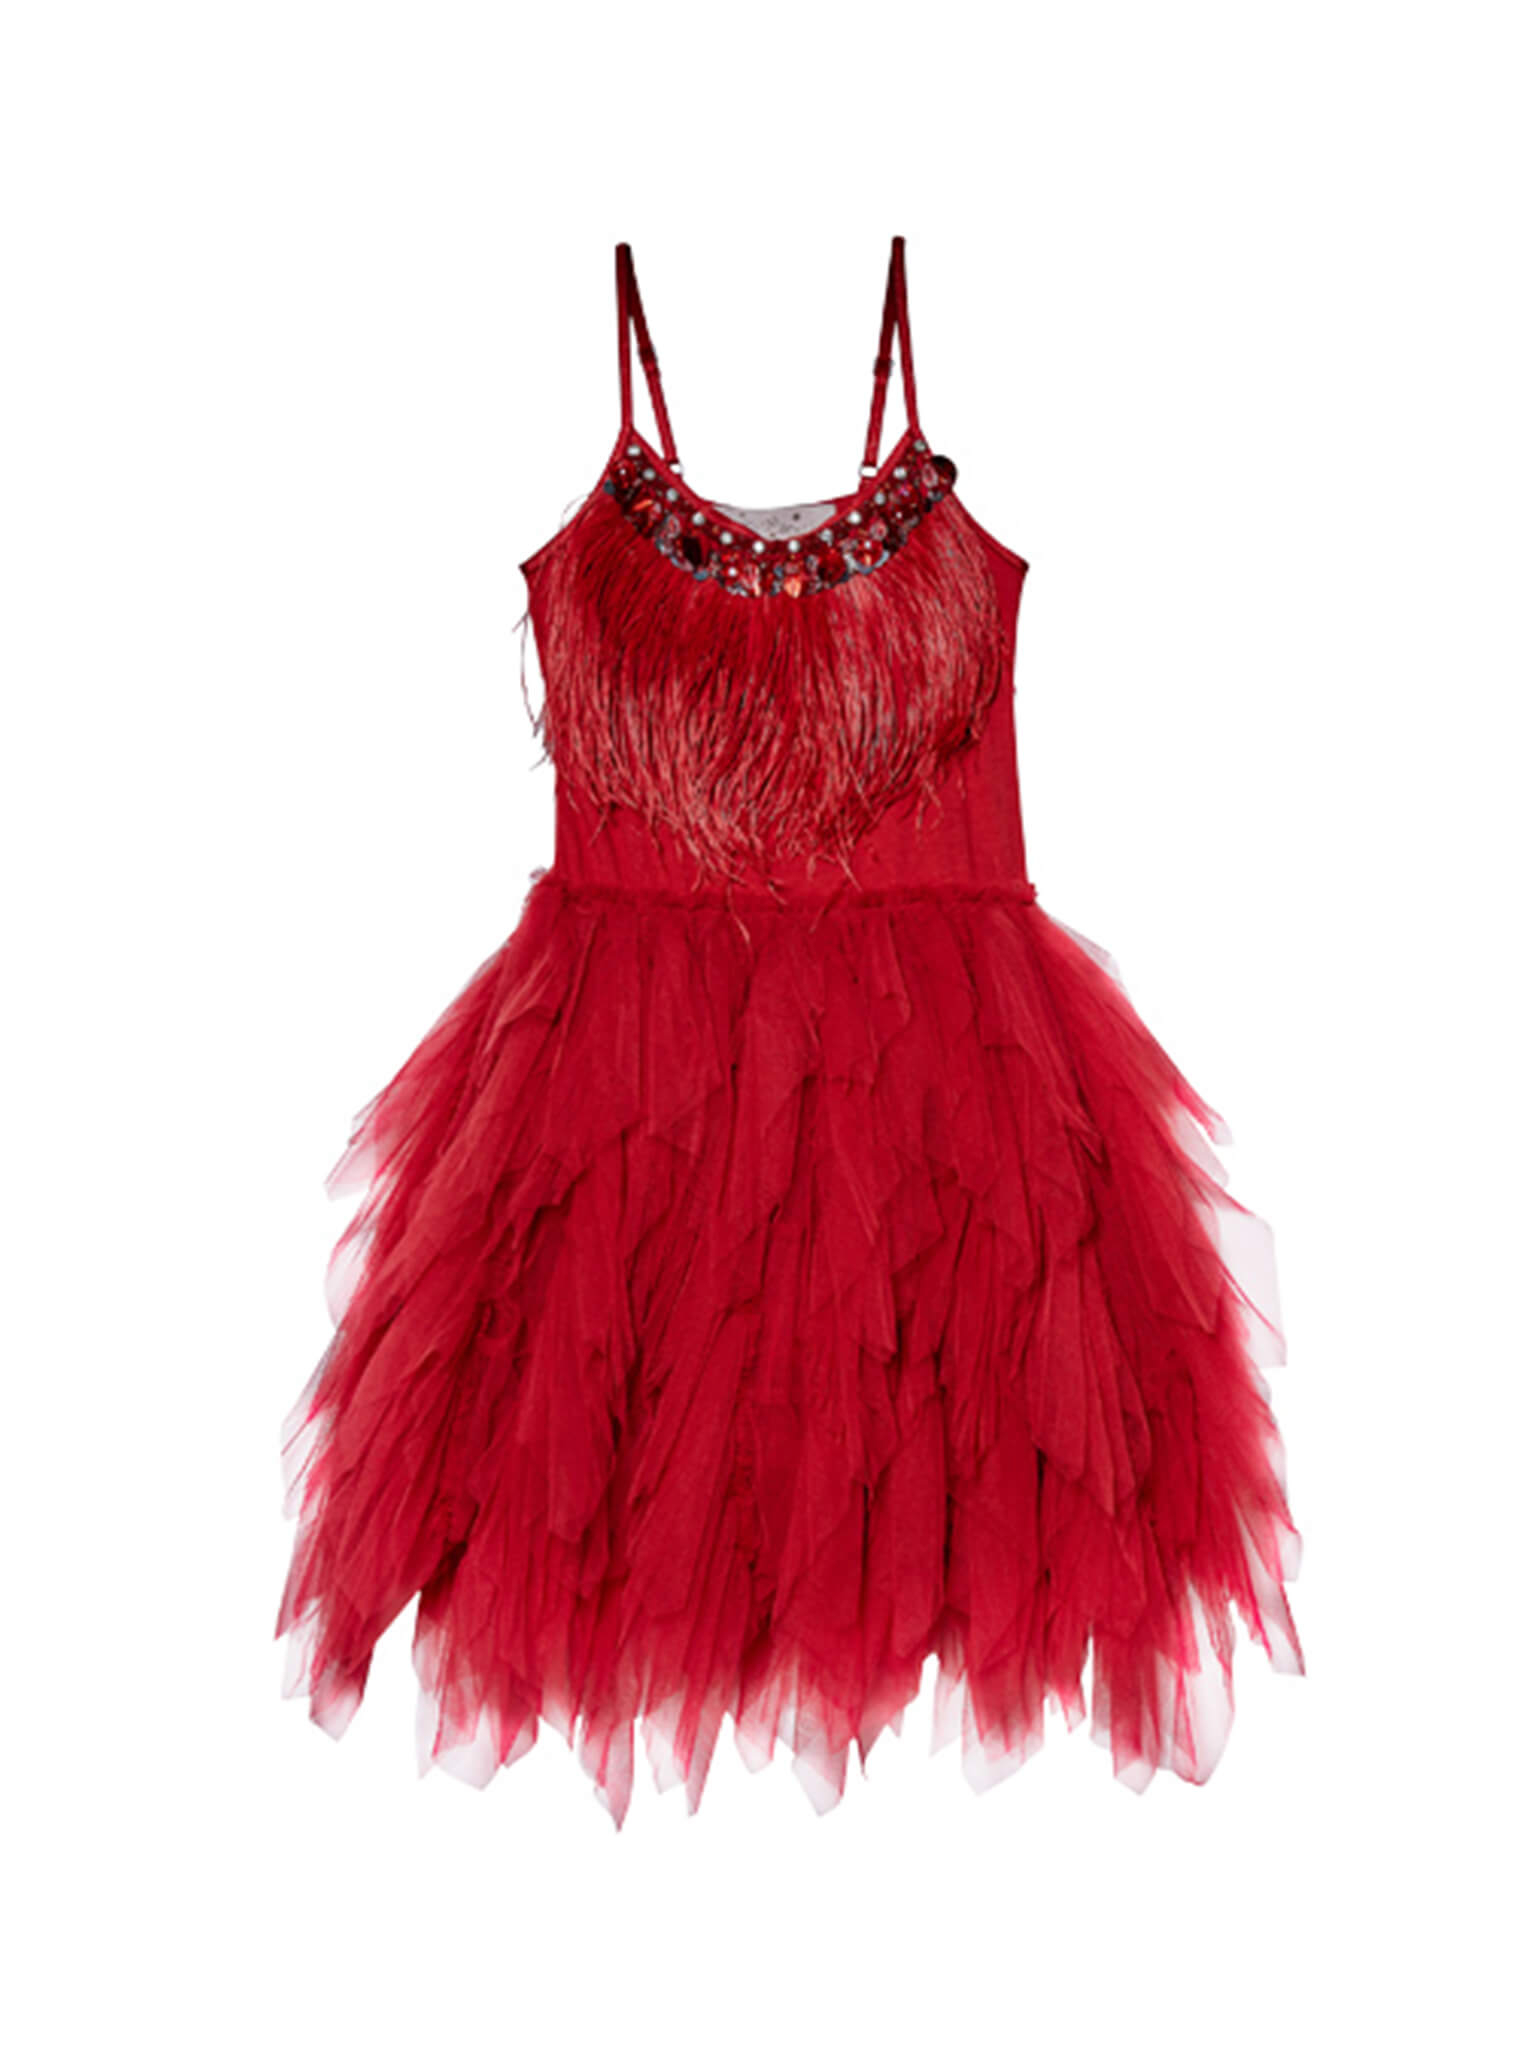 Rent Tutu du Monde Swan Queen Tutu Dress in Cranberry